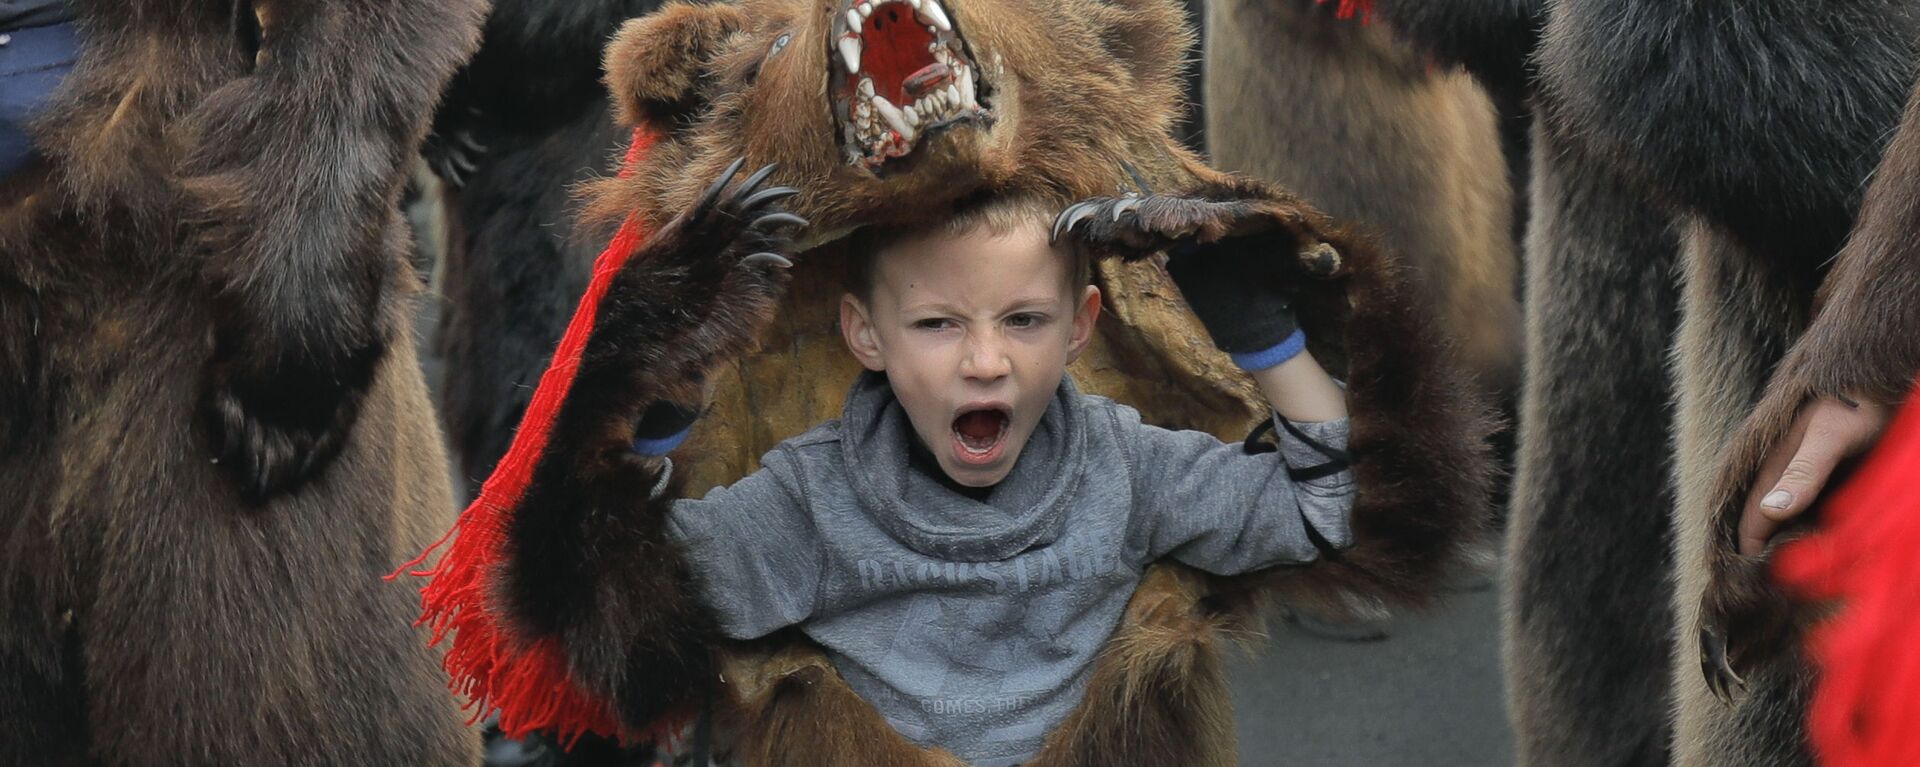 Зевающий мальчик в костюме медведя на новогоднем шествии в румынском городе Комэнешти - Sputnik Таджикистан, 1920, 31.12.2019